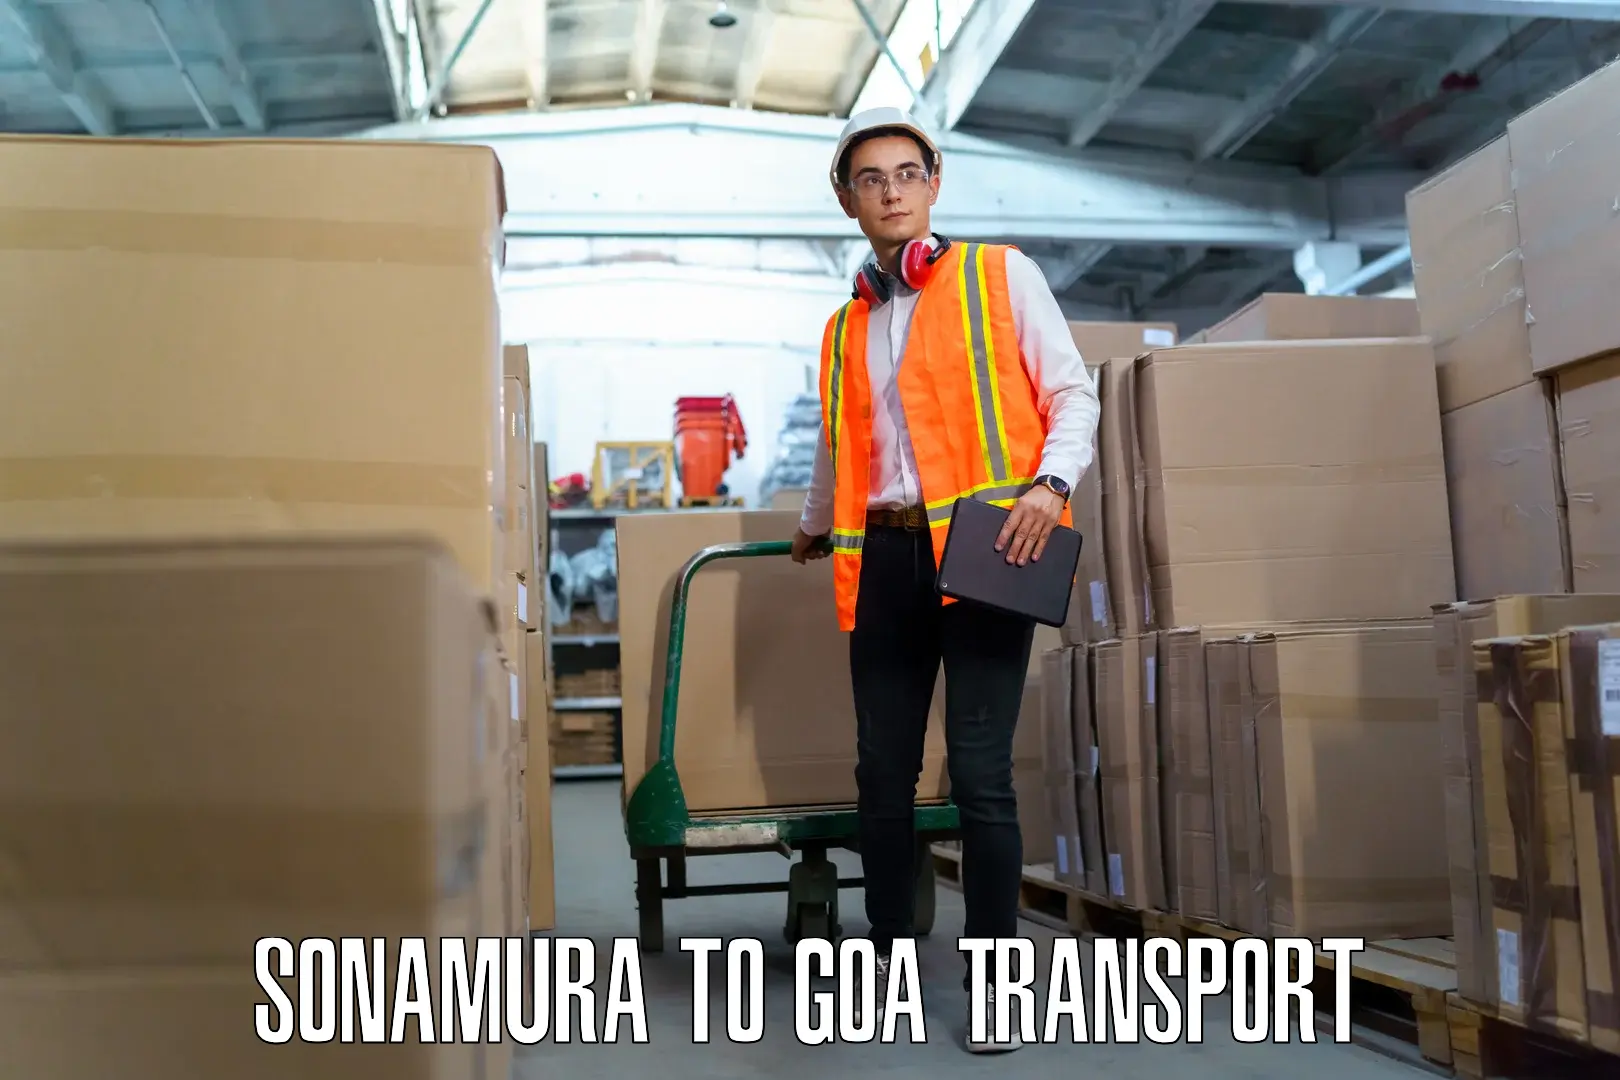 Nearby transport service Sonamura to Vasco da Gama